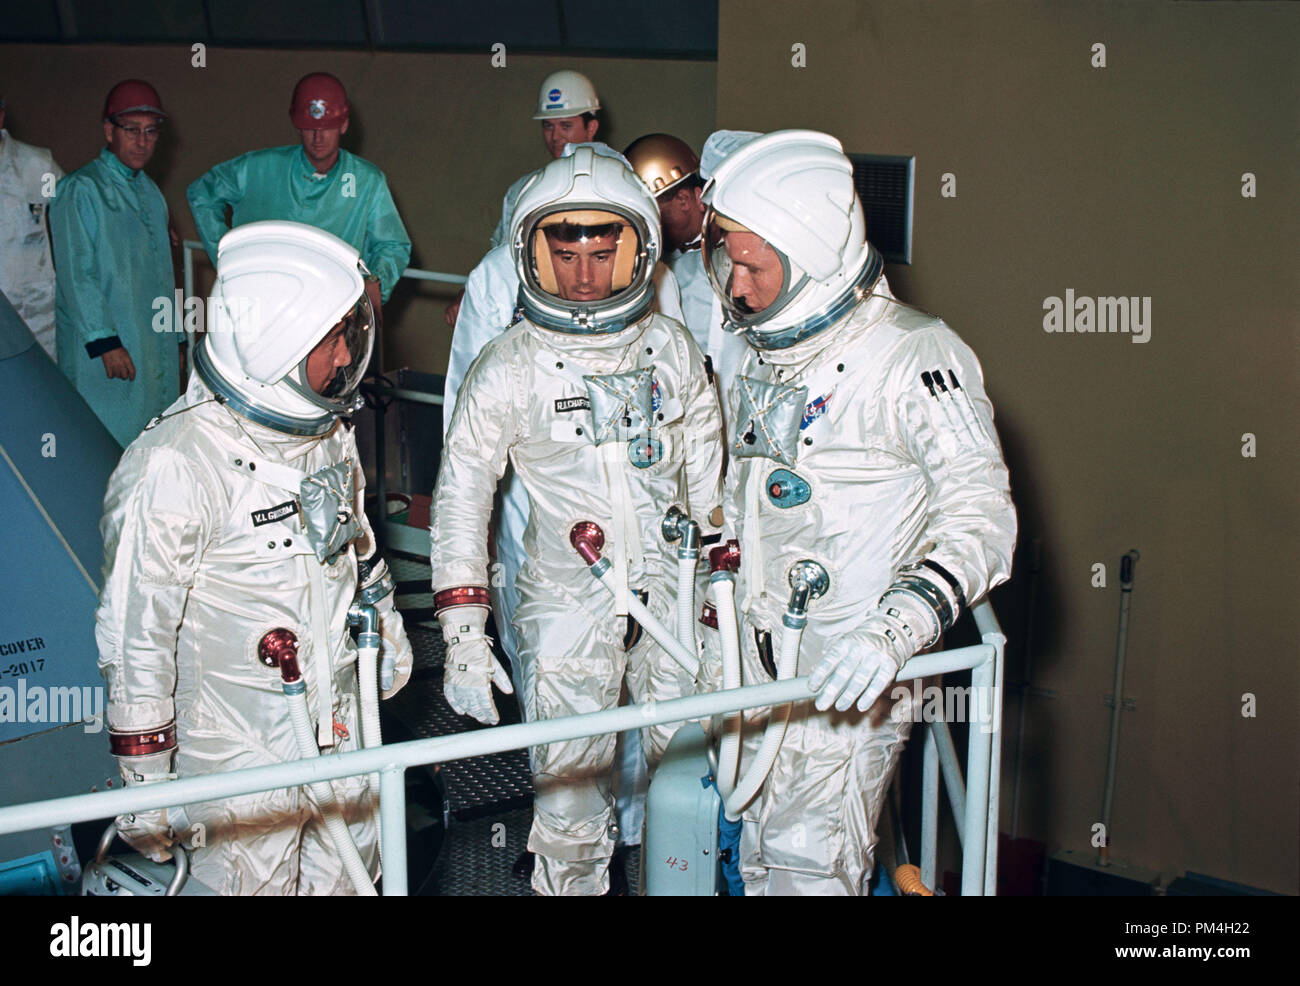 (Agosto de 1966) --- Los tres miembros de la tripulación para el Apollo-Saturn 204 (AS-204) misión verificar fuera el sofá en la instalación del módulo de comando del Apolo (CM) en el North American Downey facility. De izquierda a derecha en sus trajes espaciales presurizados son astronautas Virgil I. Grissom, Roger B. Chaffee y Edward H. White II. Nota del Editor: Los tres astronautas murieron en un incendio en la plataforma de lanzamiento, 27 de enero de 1967. Archivo de referencia # 1003 185tha Foto de stock